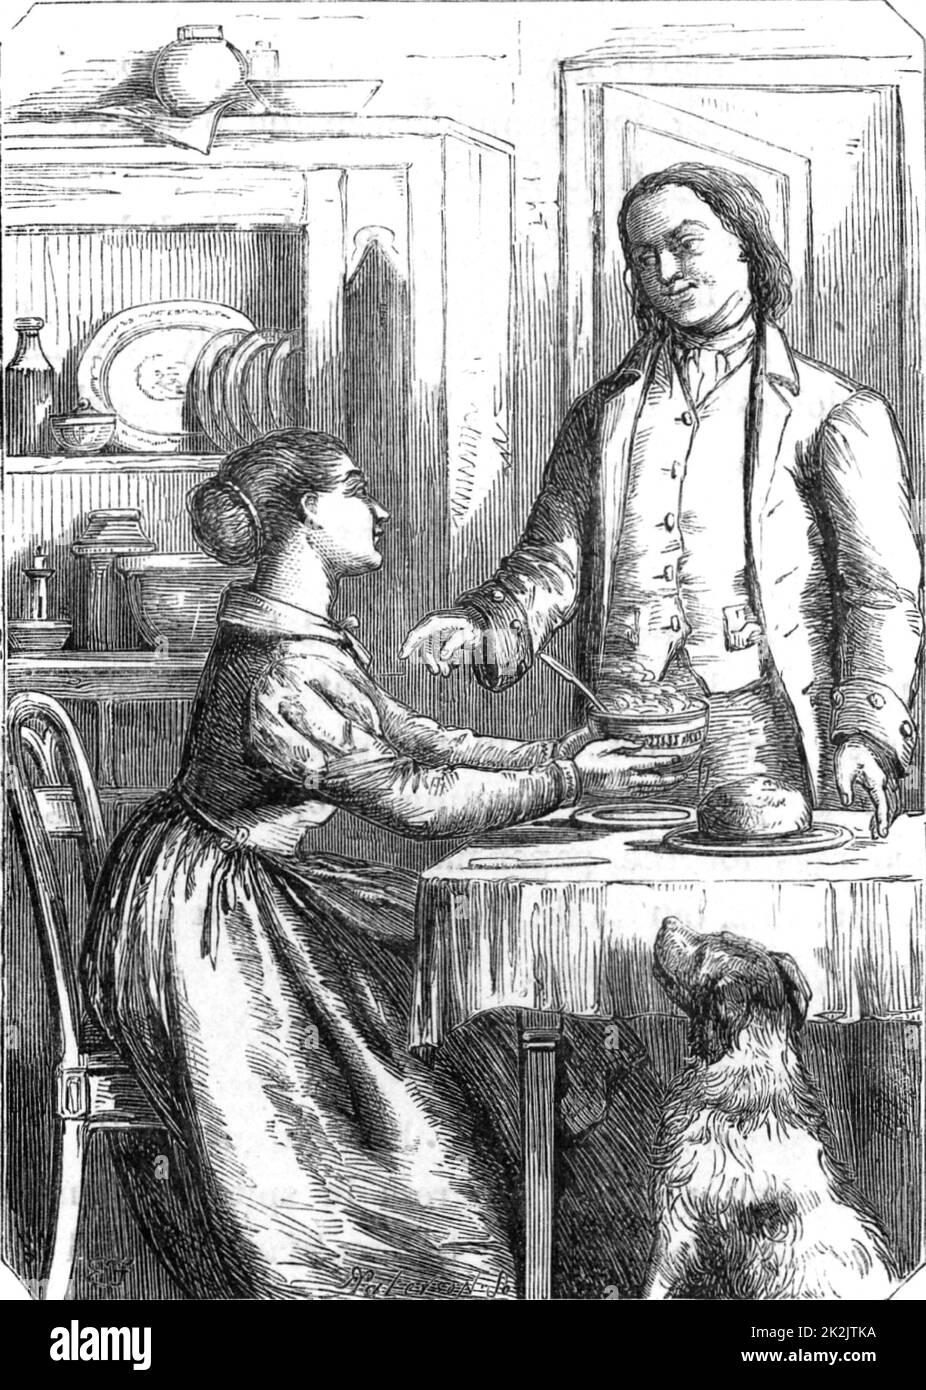 Benjamin Franklin (1706-1790) amerikanischer Drucker, Wissenschaftler und Staatsmann. Franklin, der erfolgreicher geworden ist, ist überrascht, als Deborah, seine Frau, sein Frühstück in einer porzellanschüssel mit silbernem Löffel serviert, anstatt in einer Steingutschüssel mit einem Zinnlöffel. Gravur, London 1852. Holzstich. Stockfoto